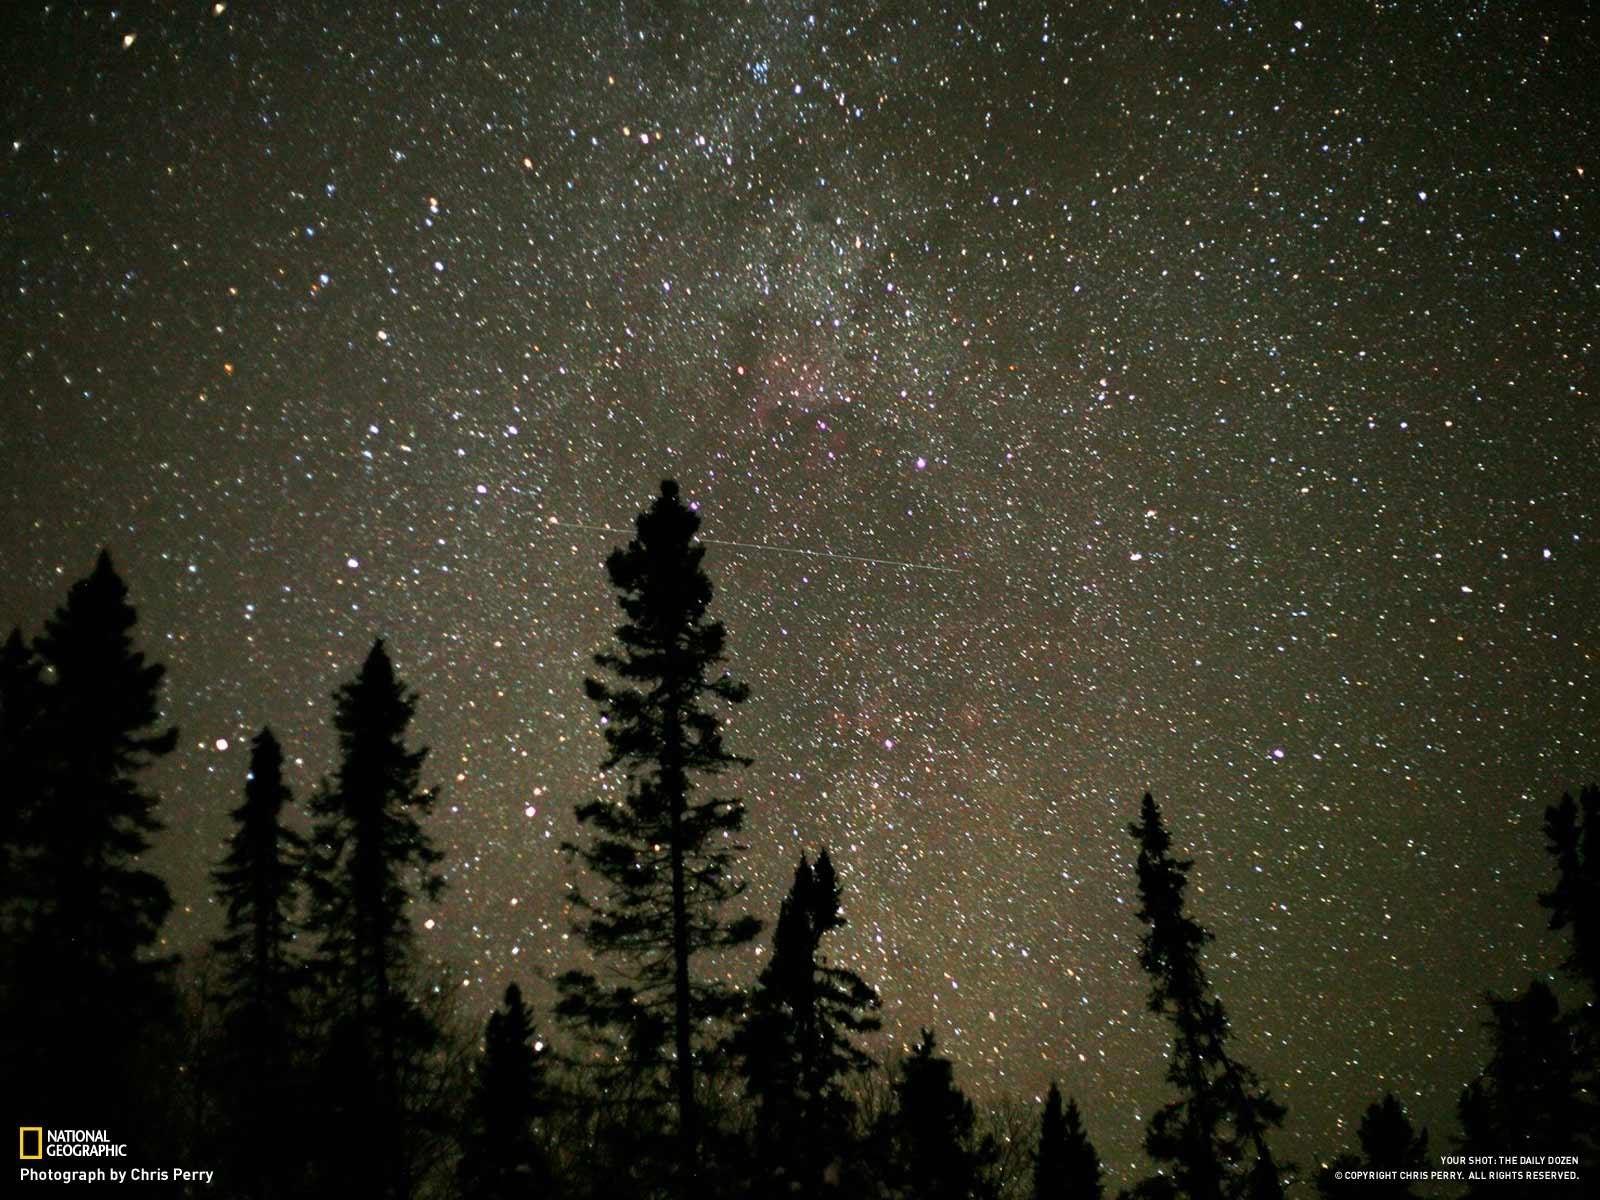 Gambar Bintang Yang Sangat Indah Di Langit Malam